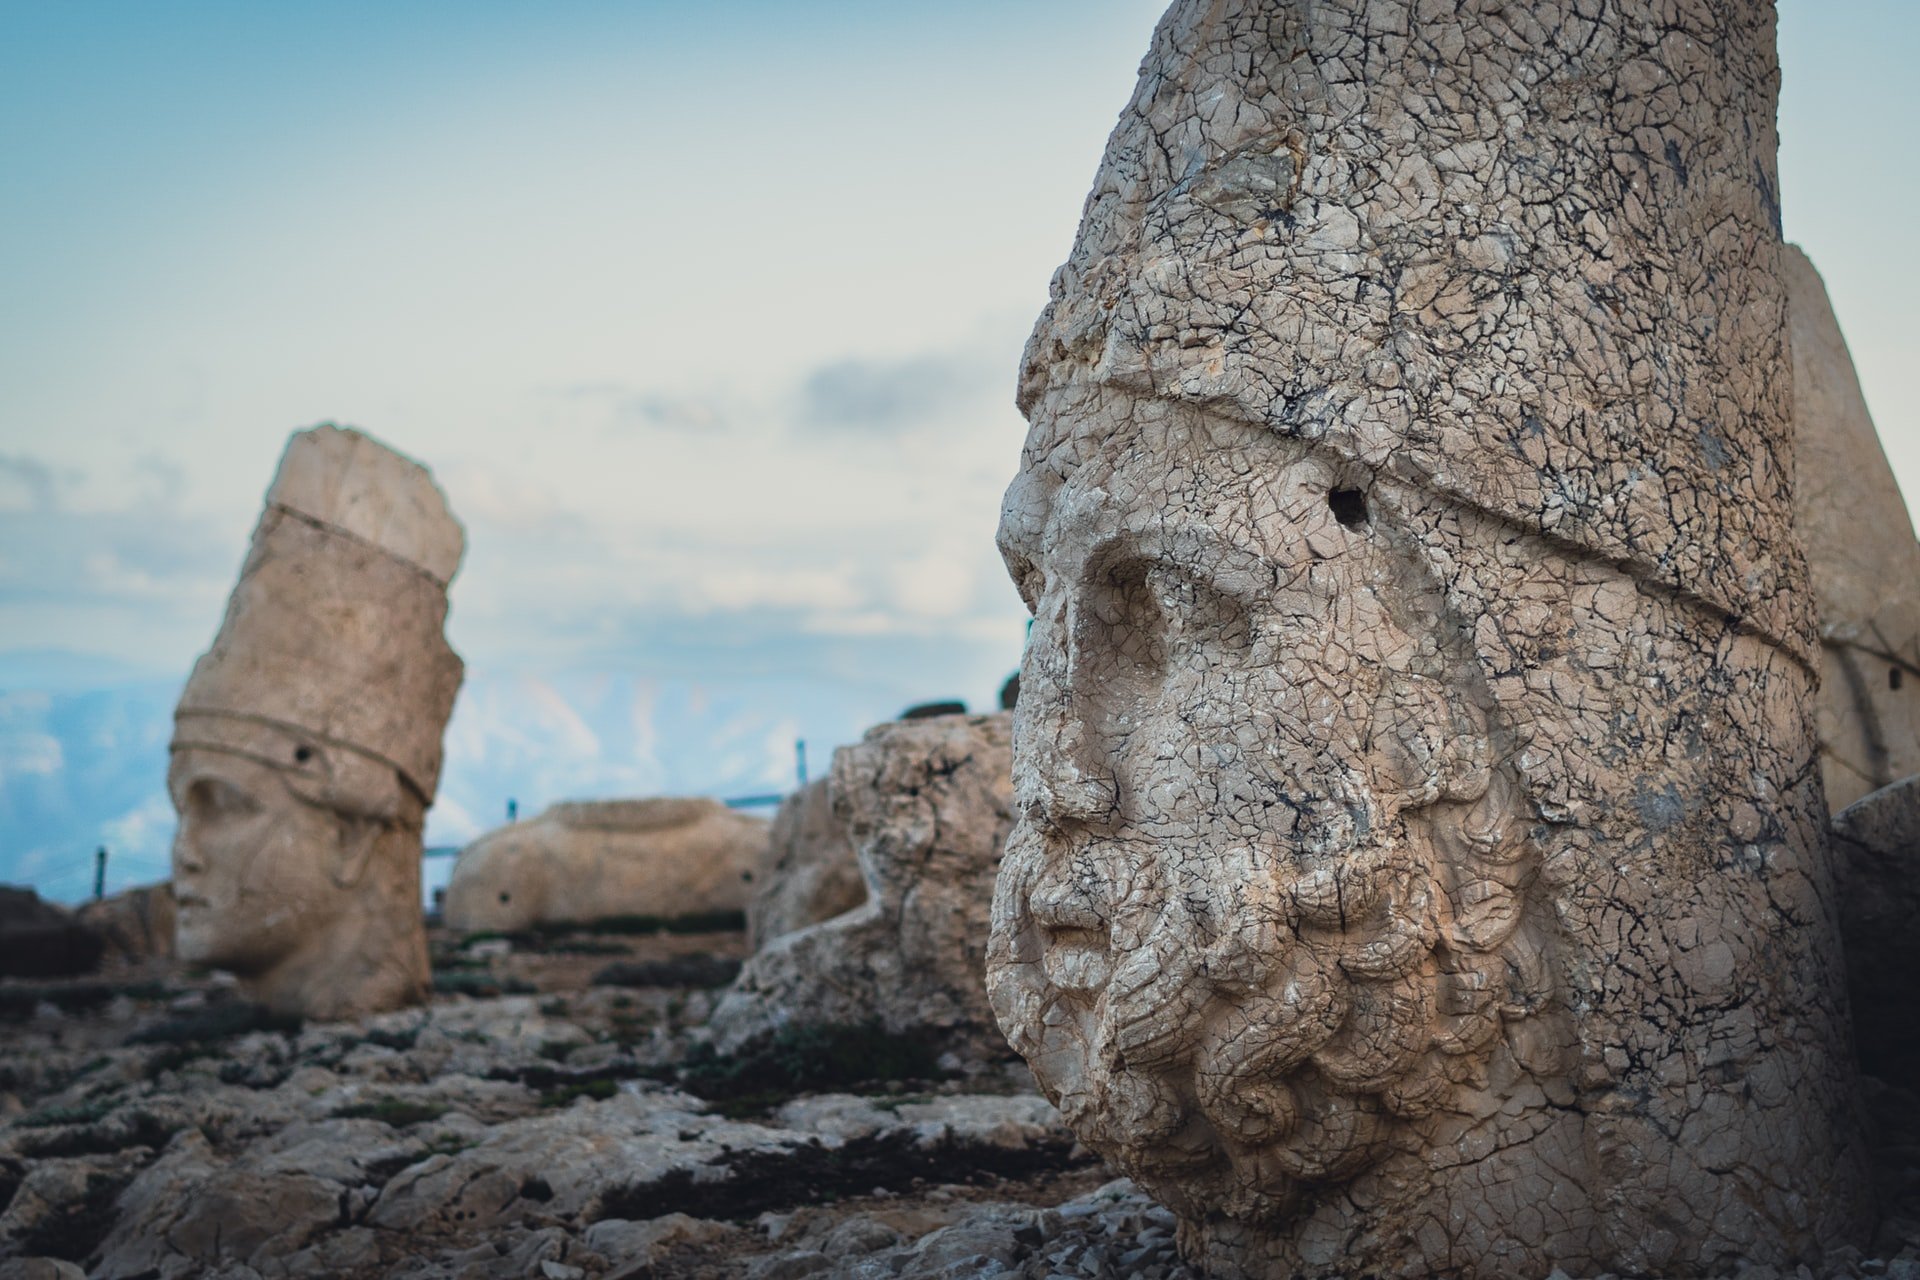 Acesta este un prim-plan al statuii unui bărbat cu barbă de pe Muntele Nemrut, unul dintre siturile istorice mai puțin cunoscute din Turcia.